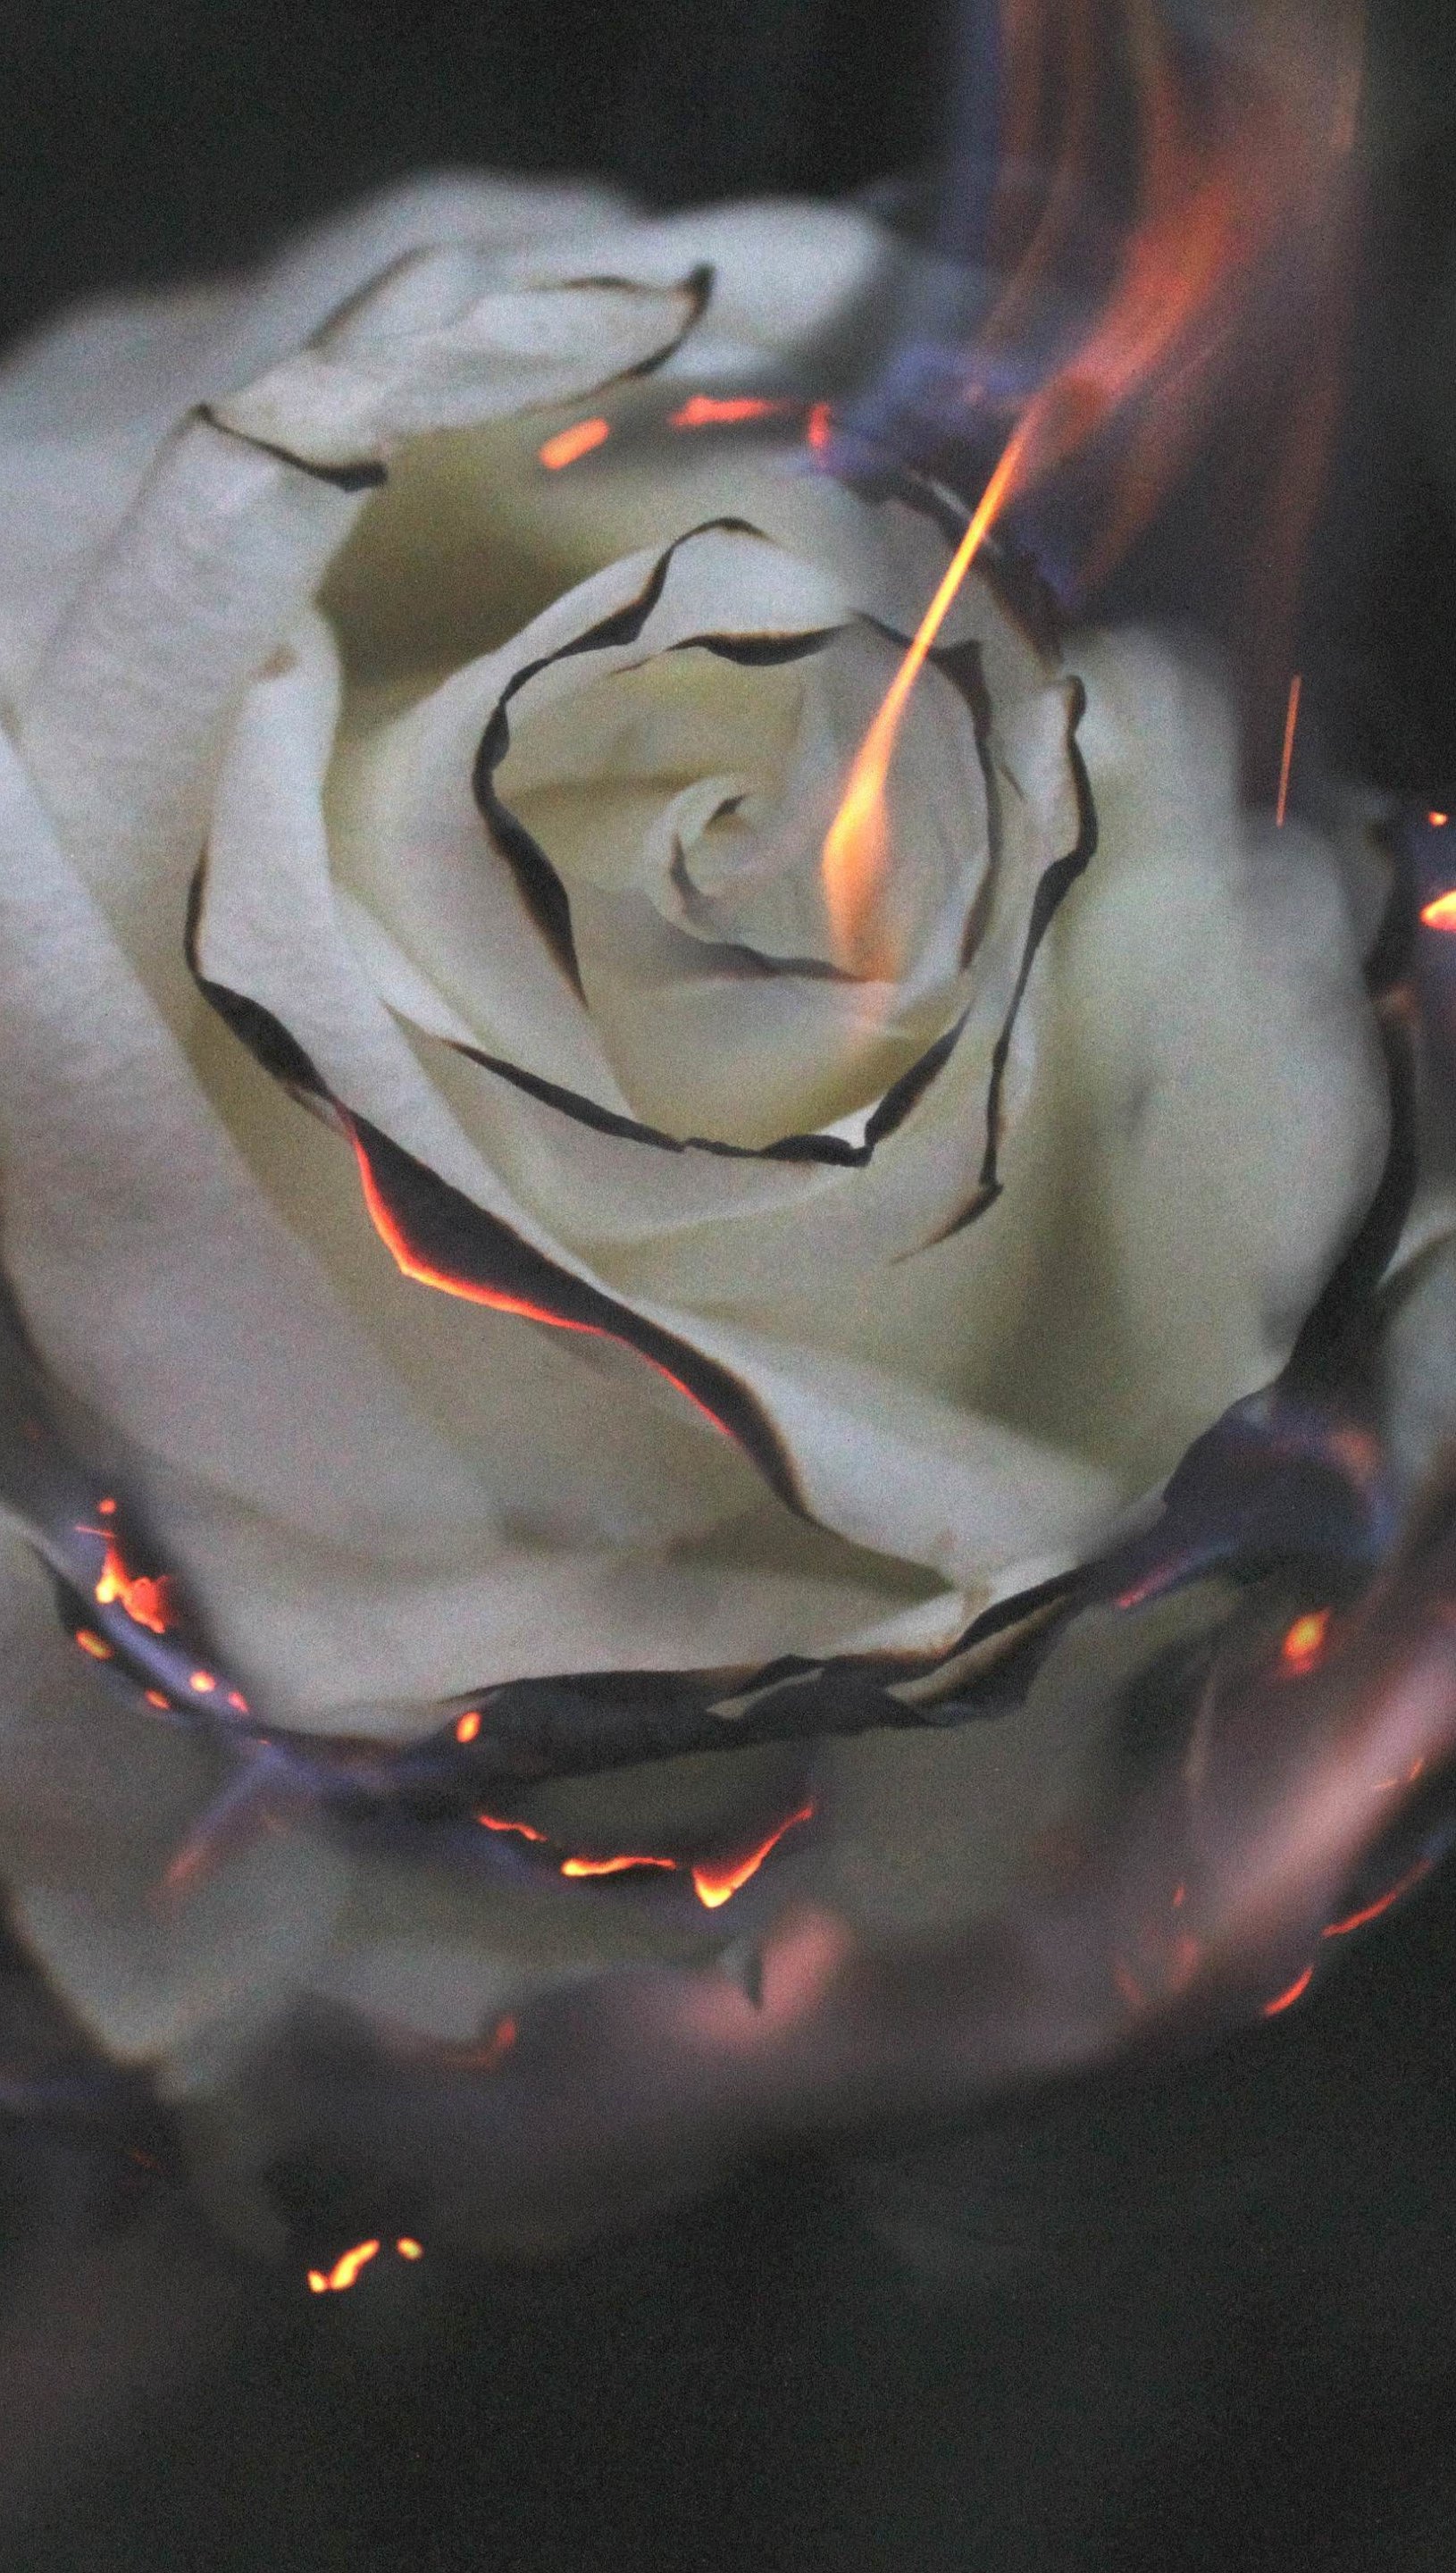 White rose on fire Wallpaper 5k Ultra HD ID:4622